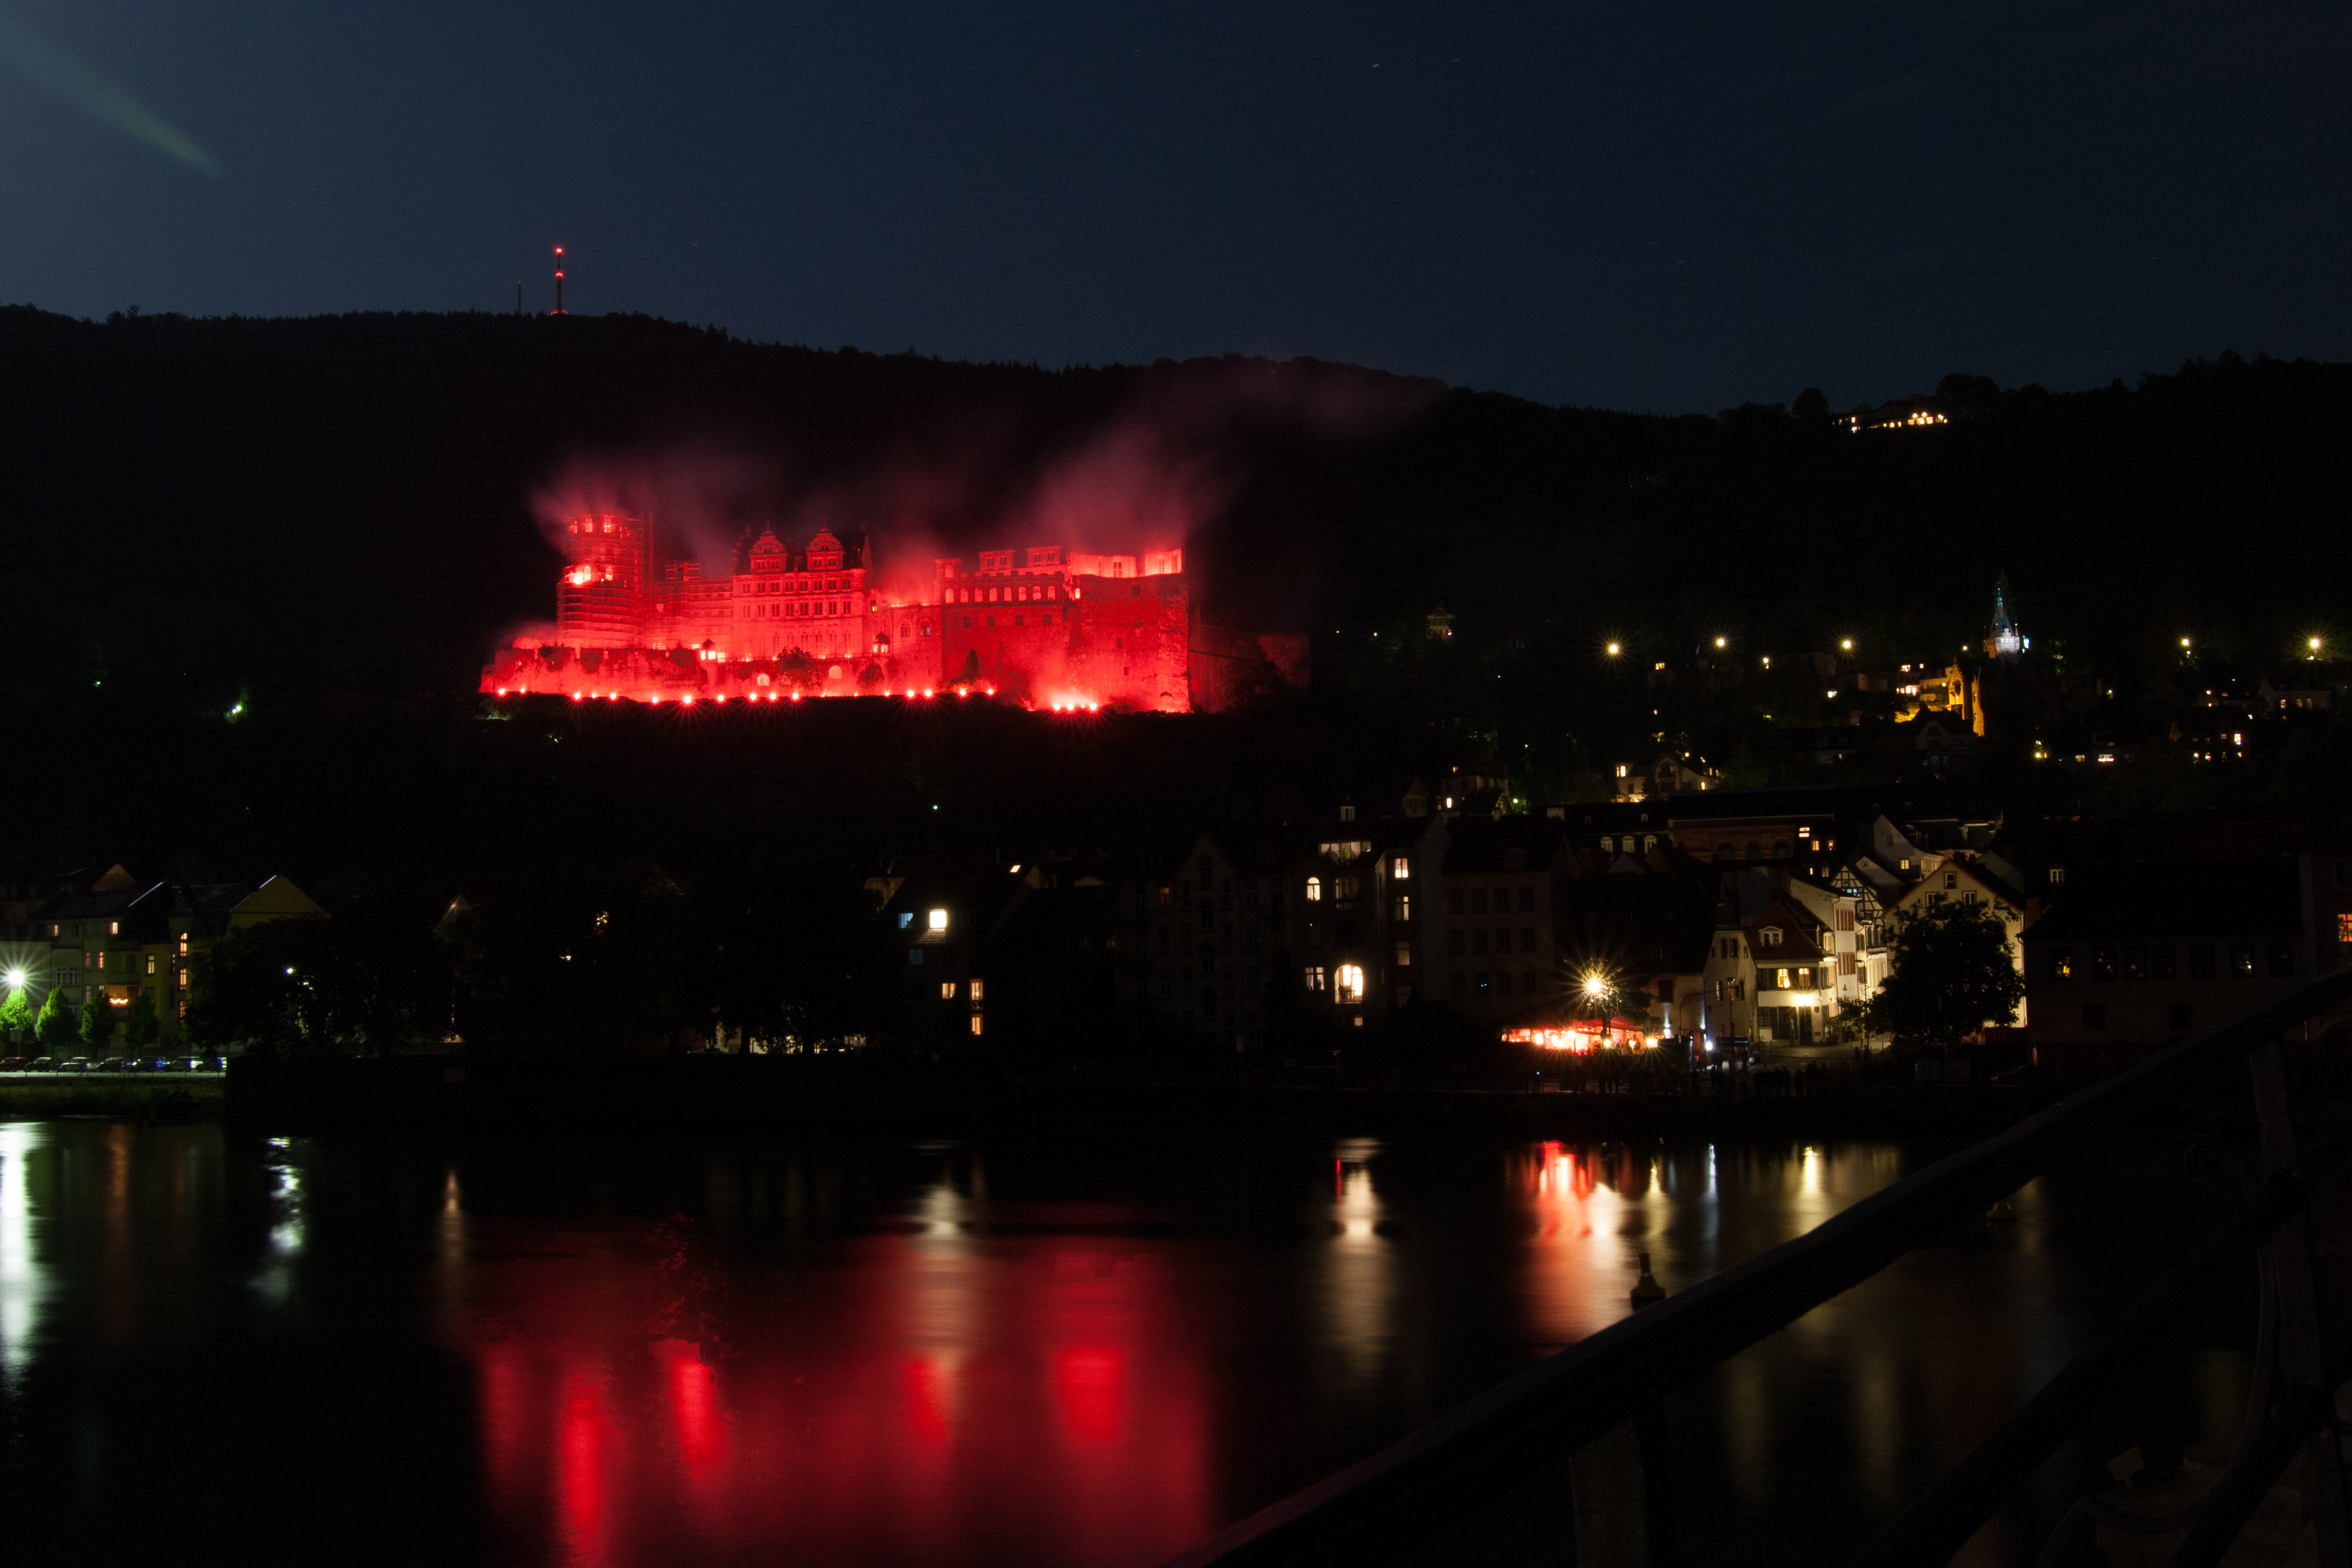 Ruinen des Heidelberger Schloss in rotem Feuerschein. Es wirkt, als würde das Schloss brennen.